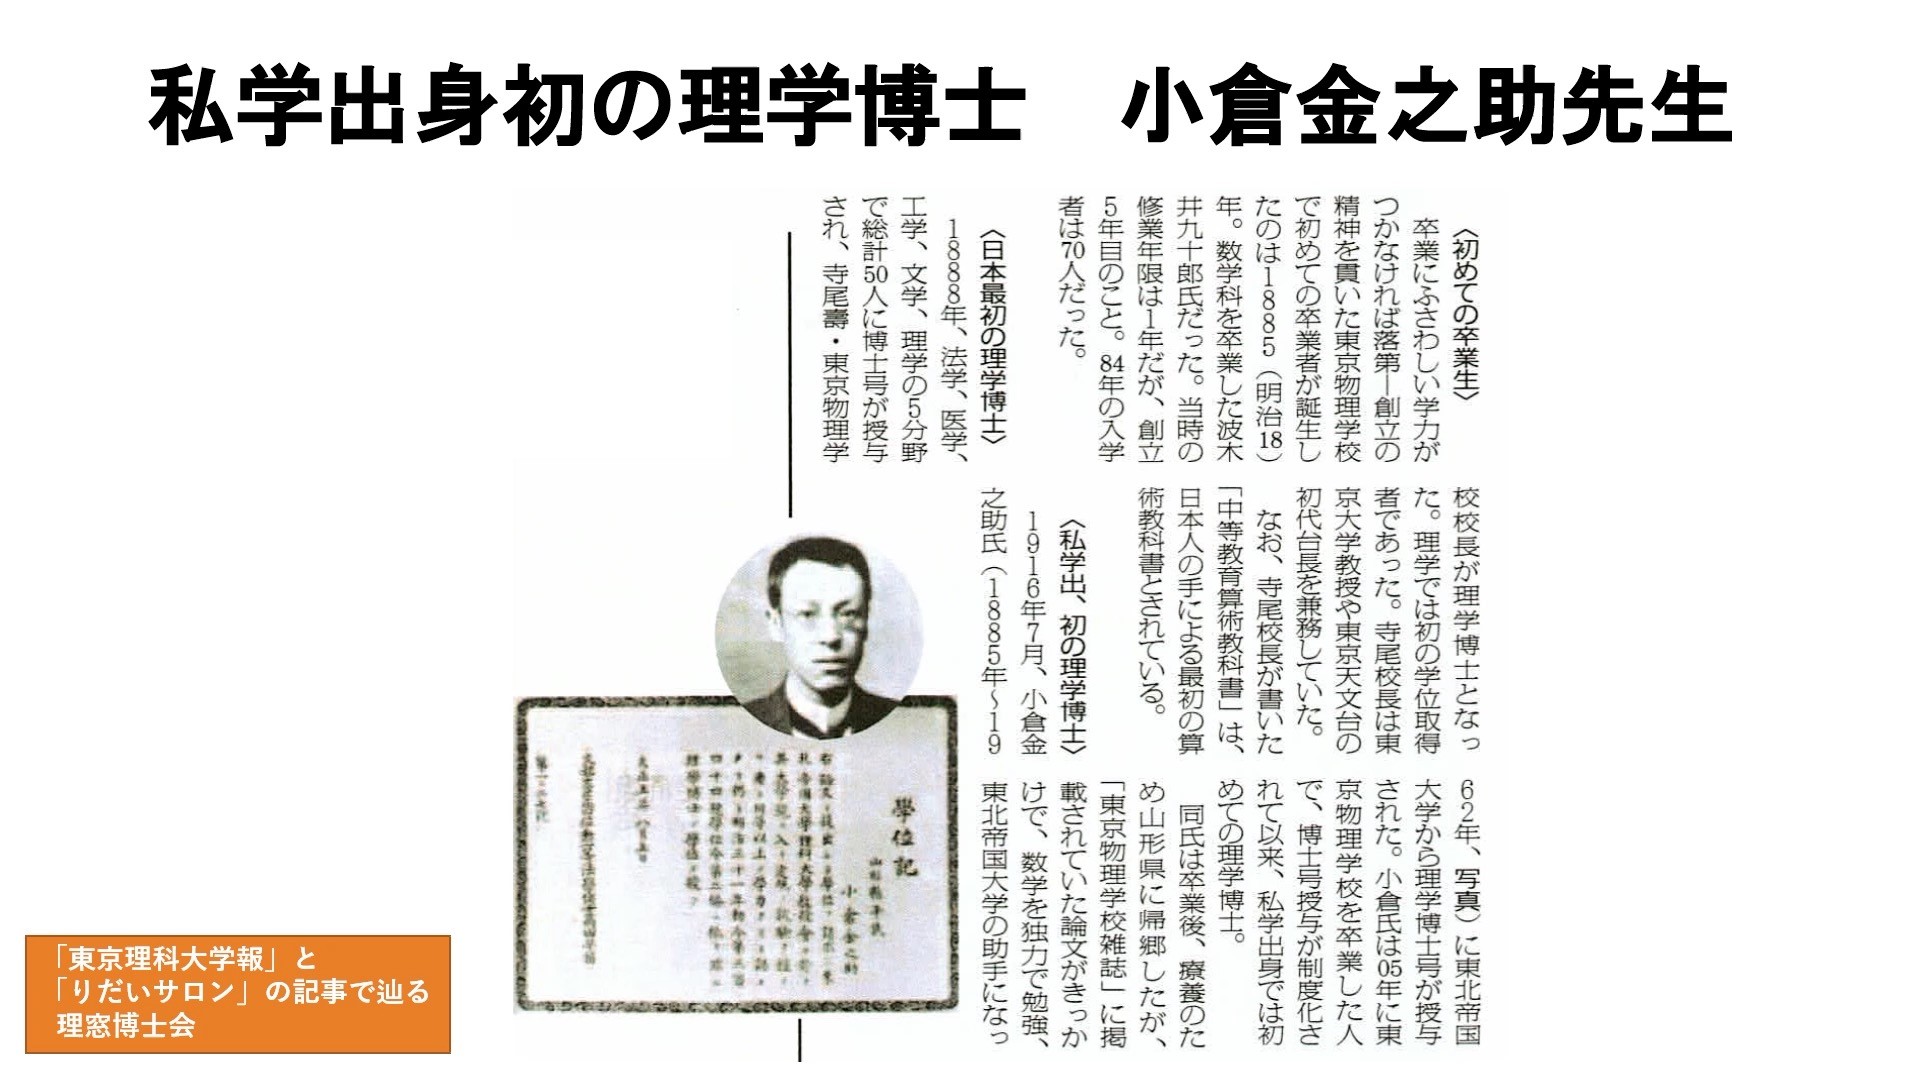 「東京理科大学報」と「りだいサロン」の記事で辿る理窓博士会